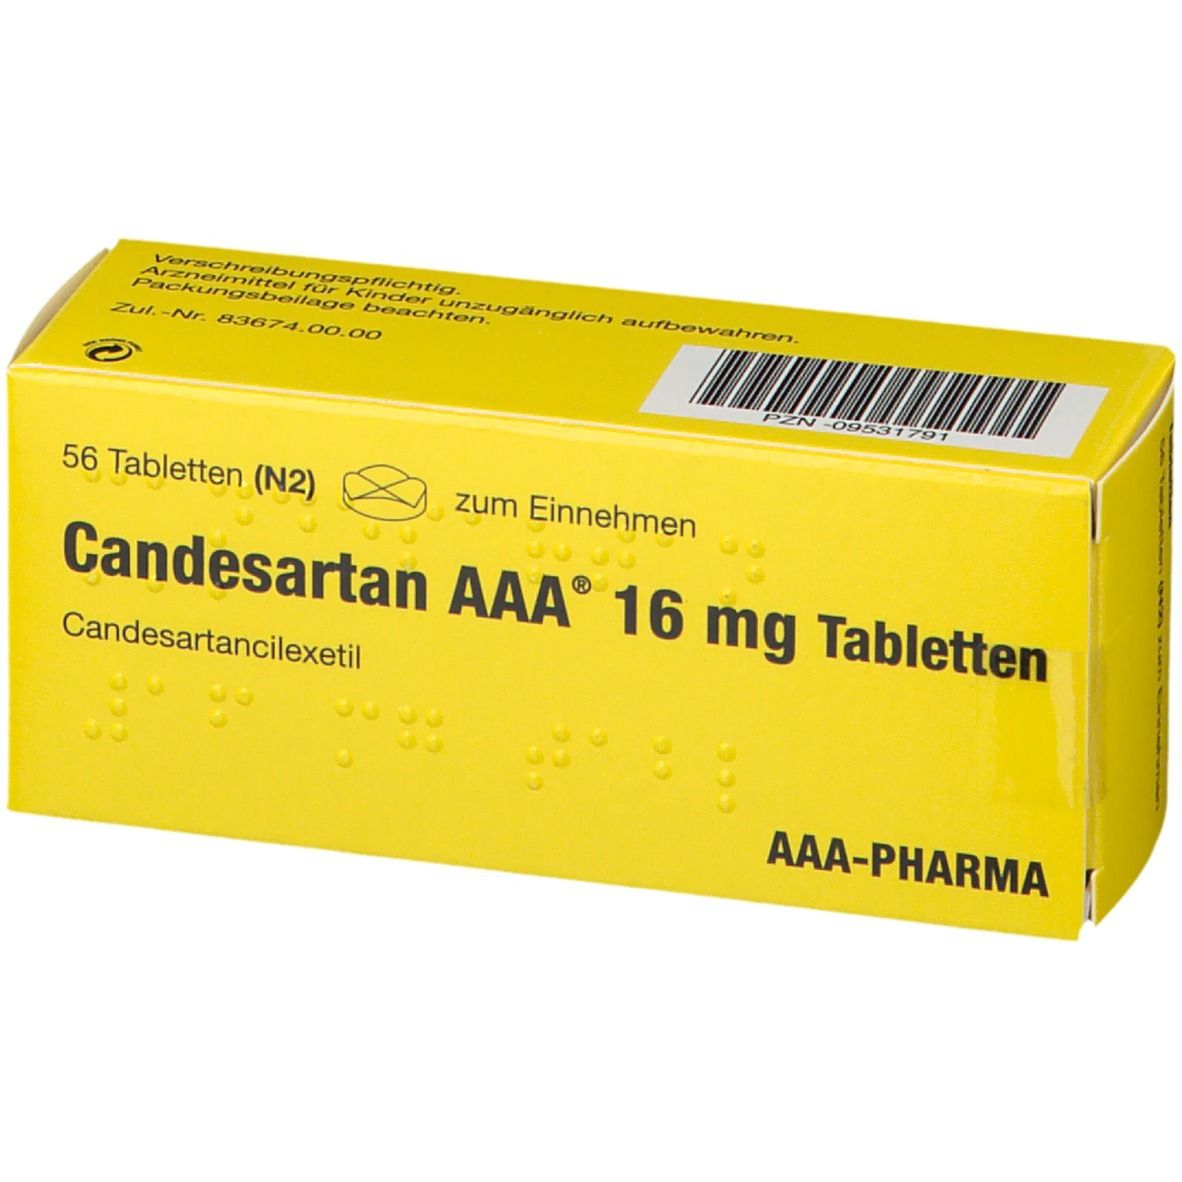 Candesartan AAA® 16 mg